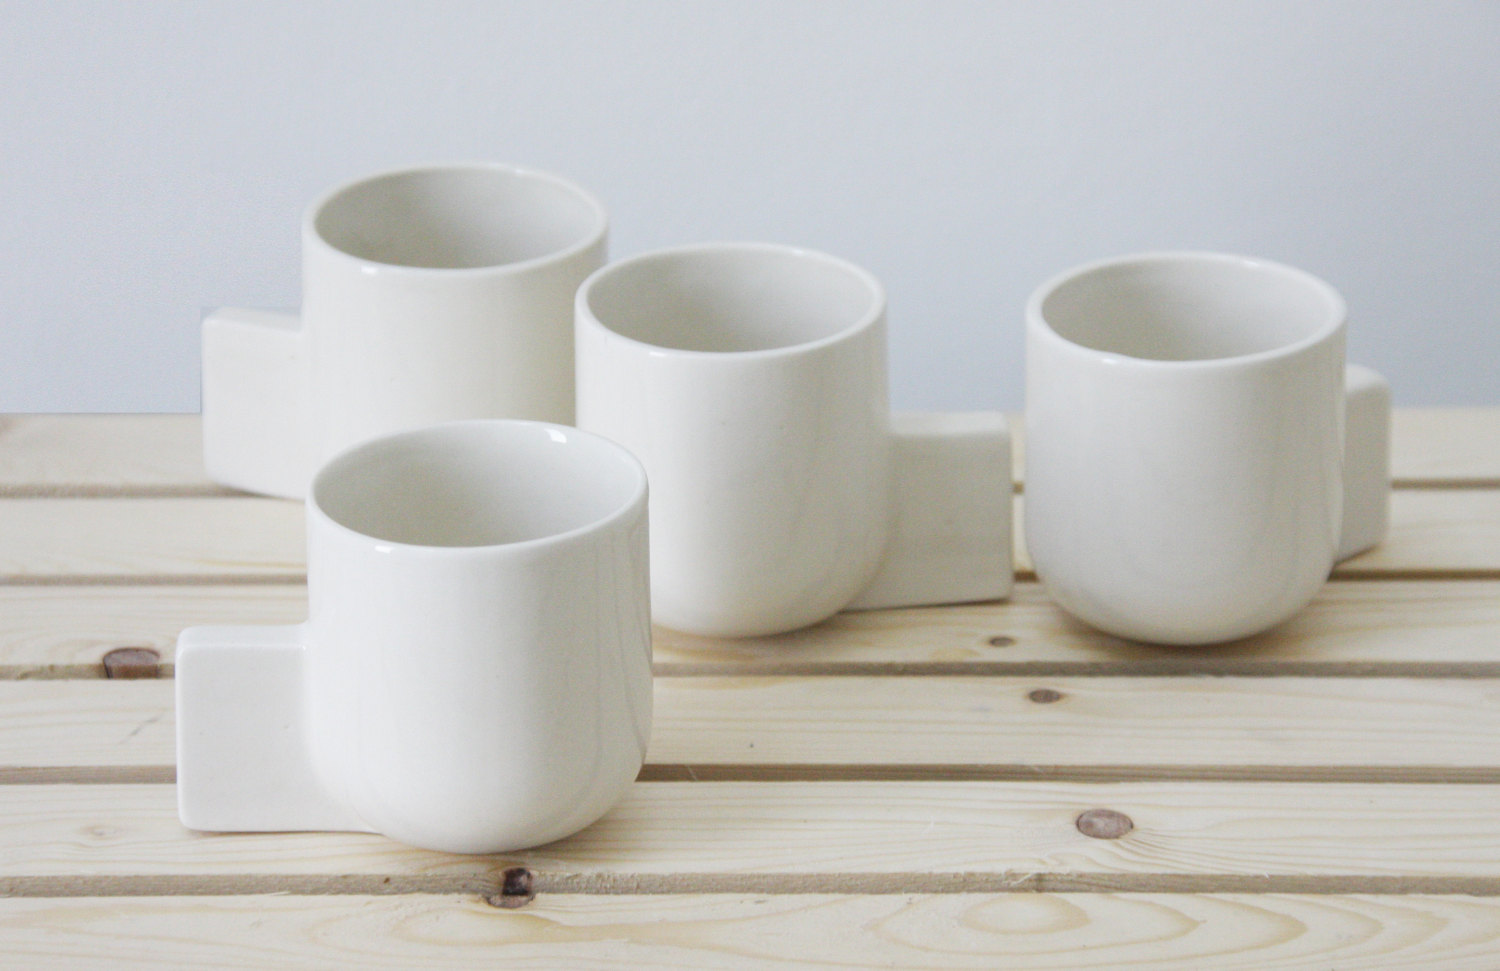 Ceramic espresso cup by ONEandMANY | Flodeau.com